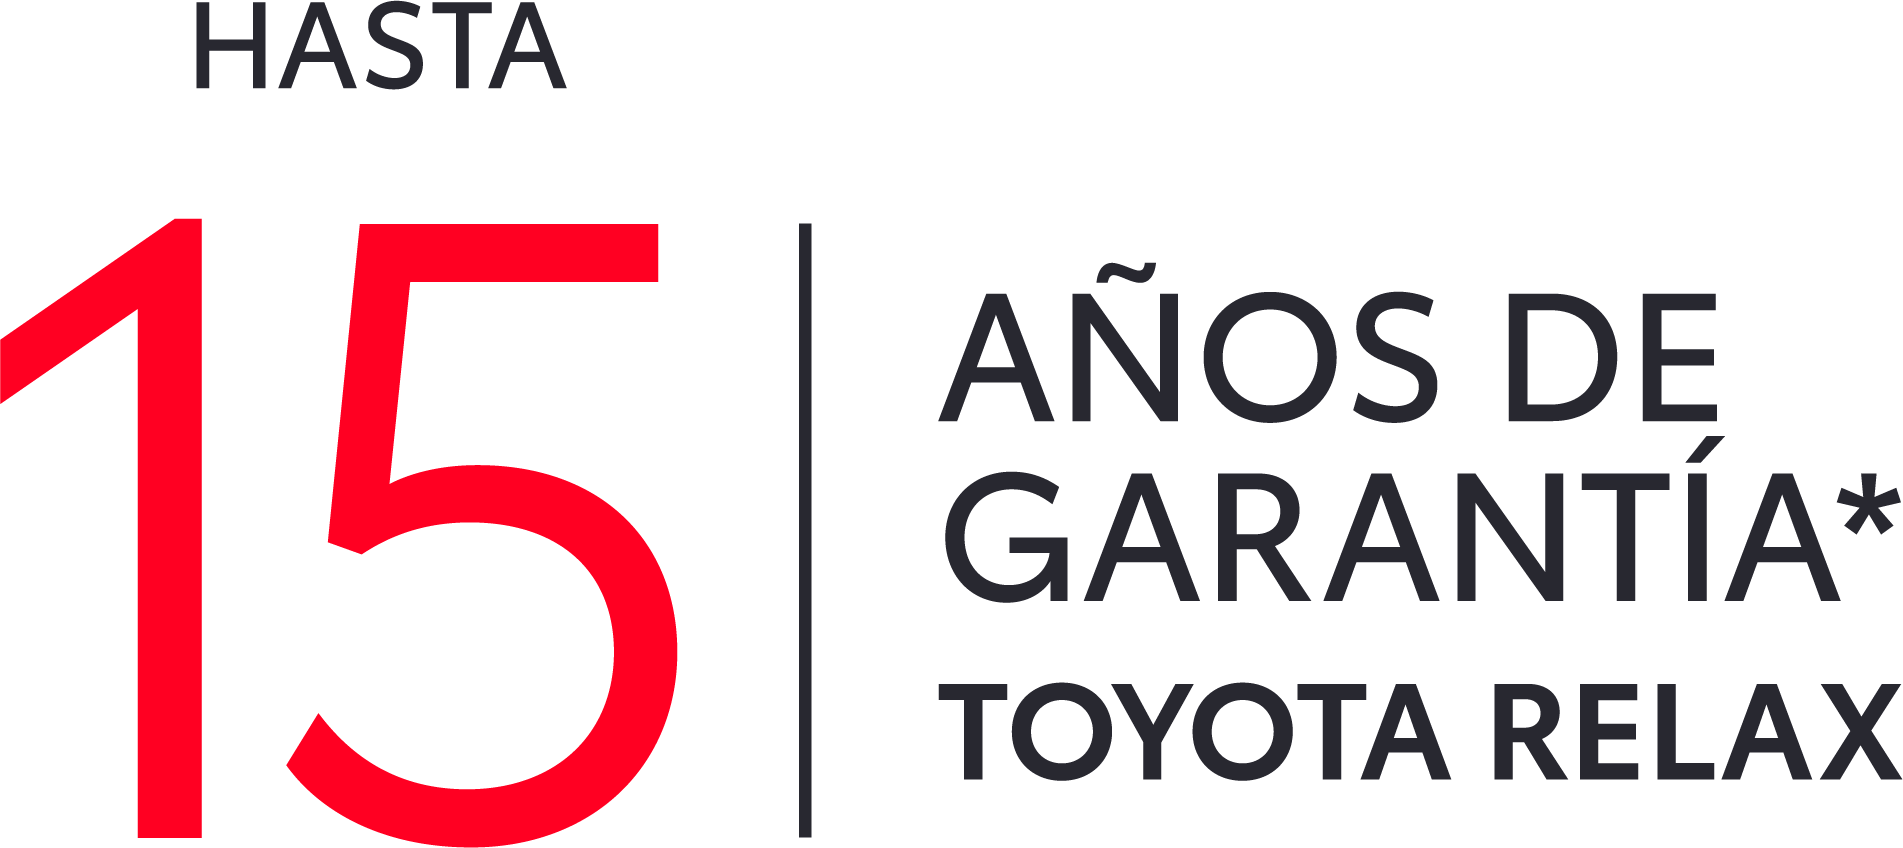 Nuevo 5 puertas Toyota Corolla Hatchback híbrido